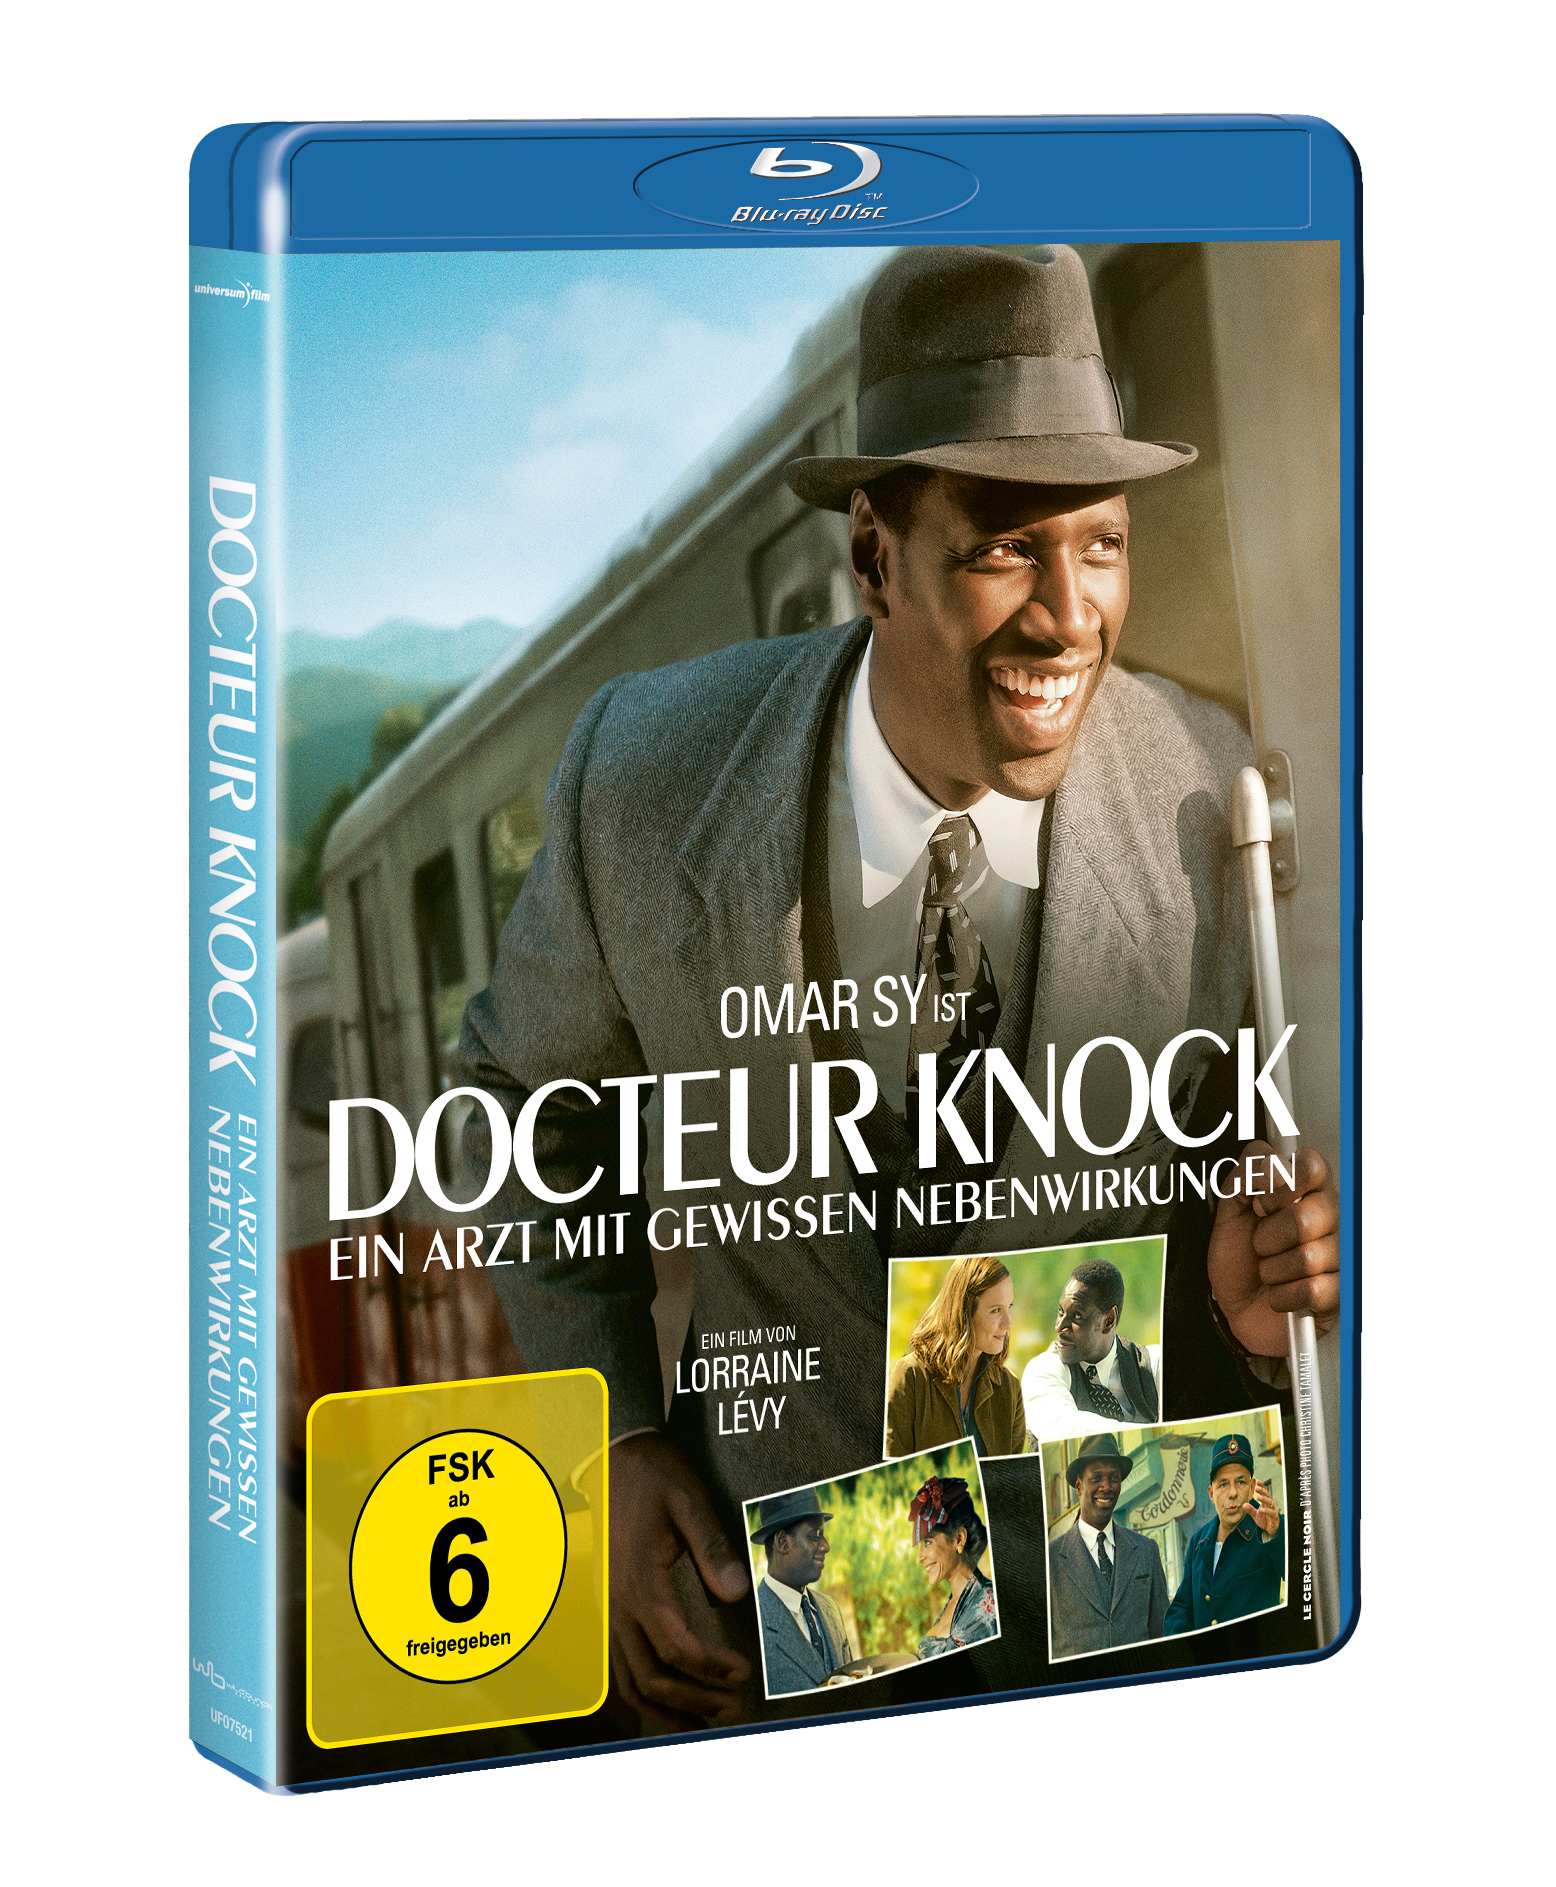 Knock Blu-ray mit Nebenwirkungen - Docteur Ein Arzt gewissen